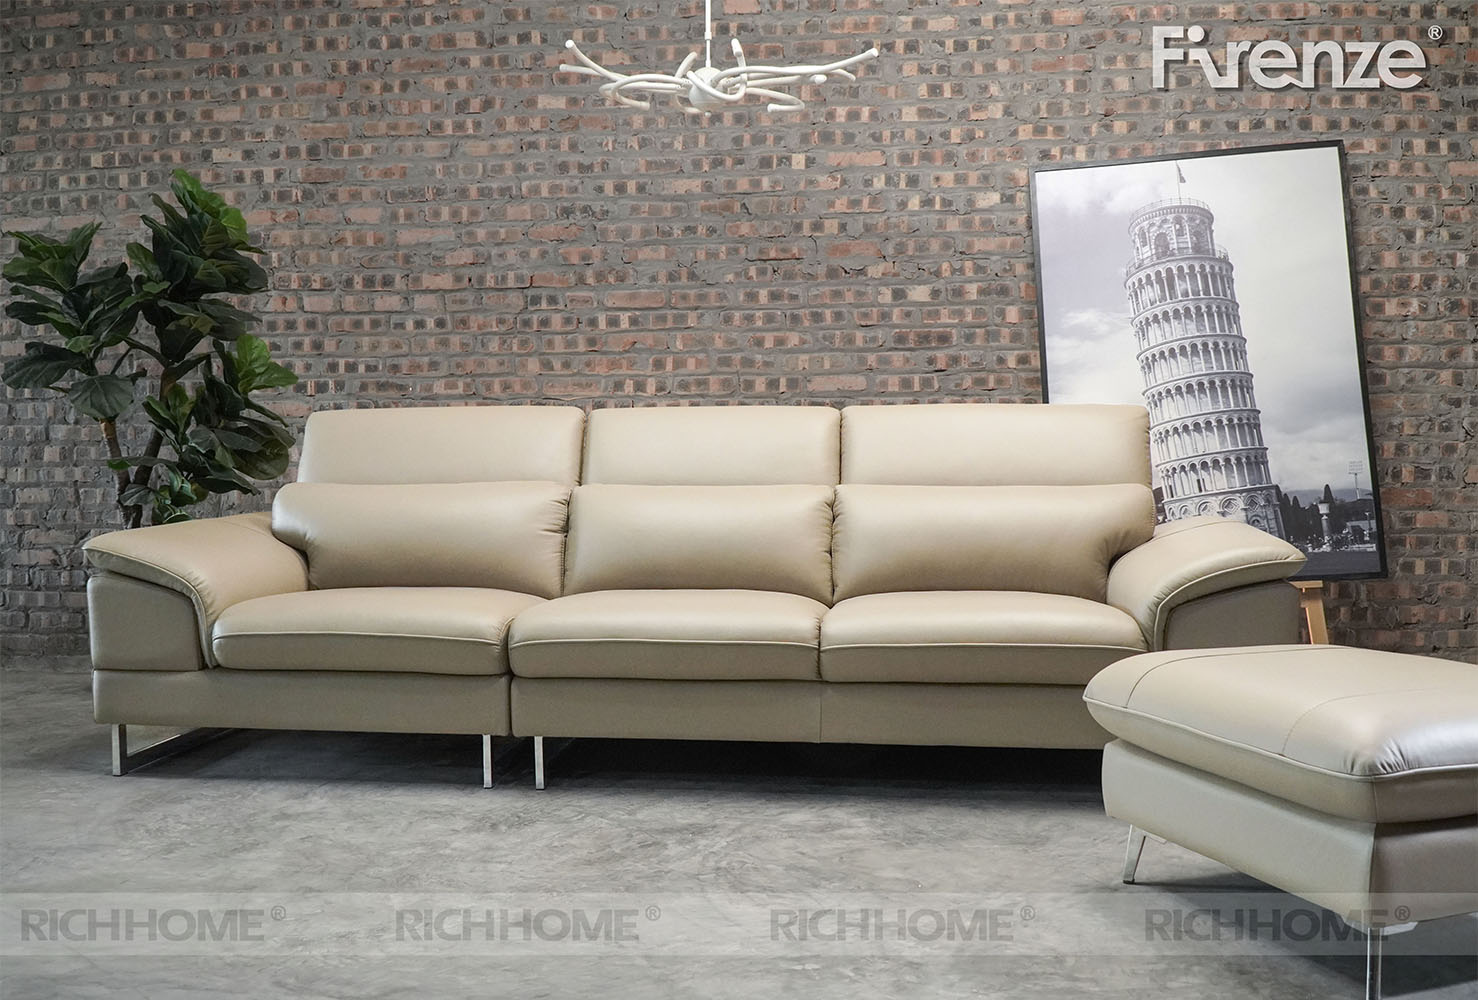 15 mẫu bàn ghế sofa phòng khách nhập khẩu đáng mua nhất - Ảnh 3